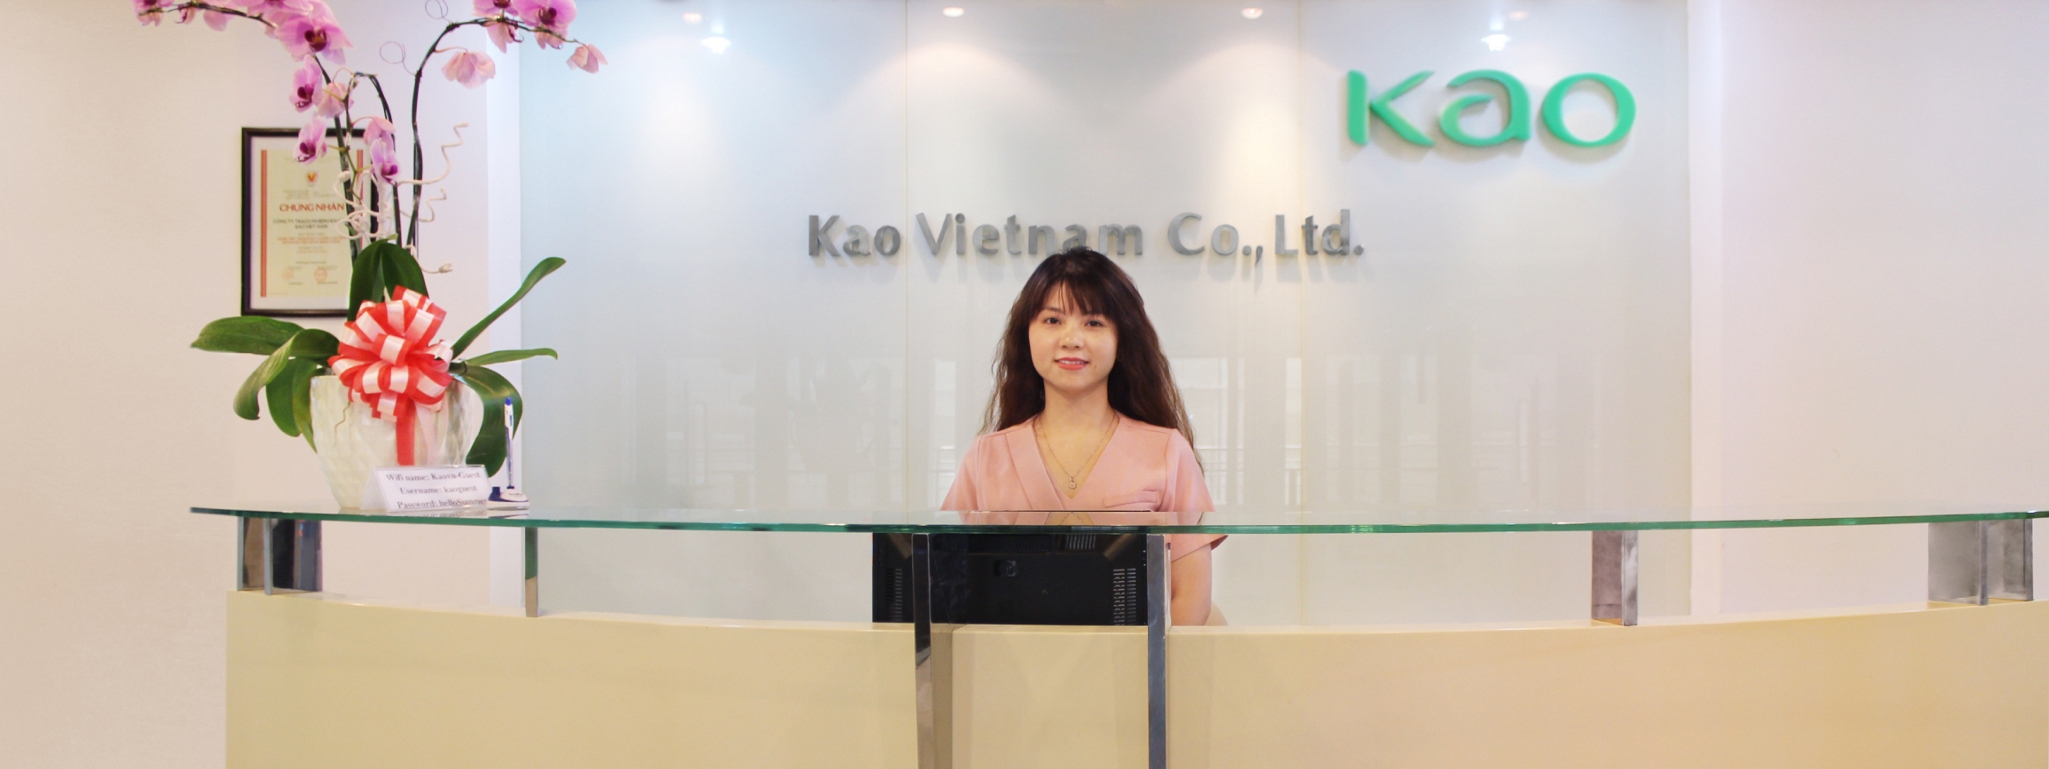 Công ty Trách nhiệm hữu hạn KAO Việt Nam là một công ty hoạt động trong lĩnh vực sản xuất và phân phối các sản phẩm chăm sóc cá nhân và gia đình.